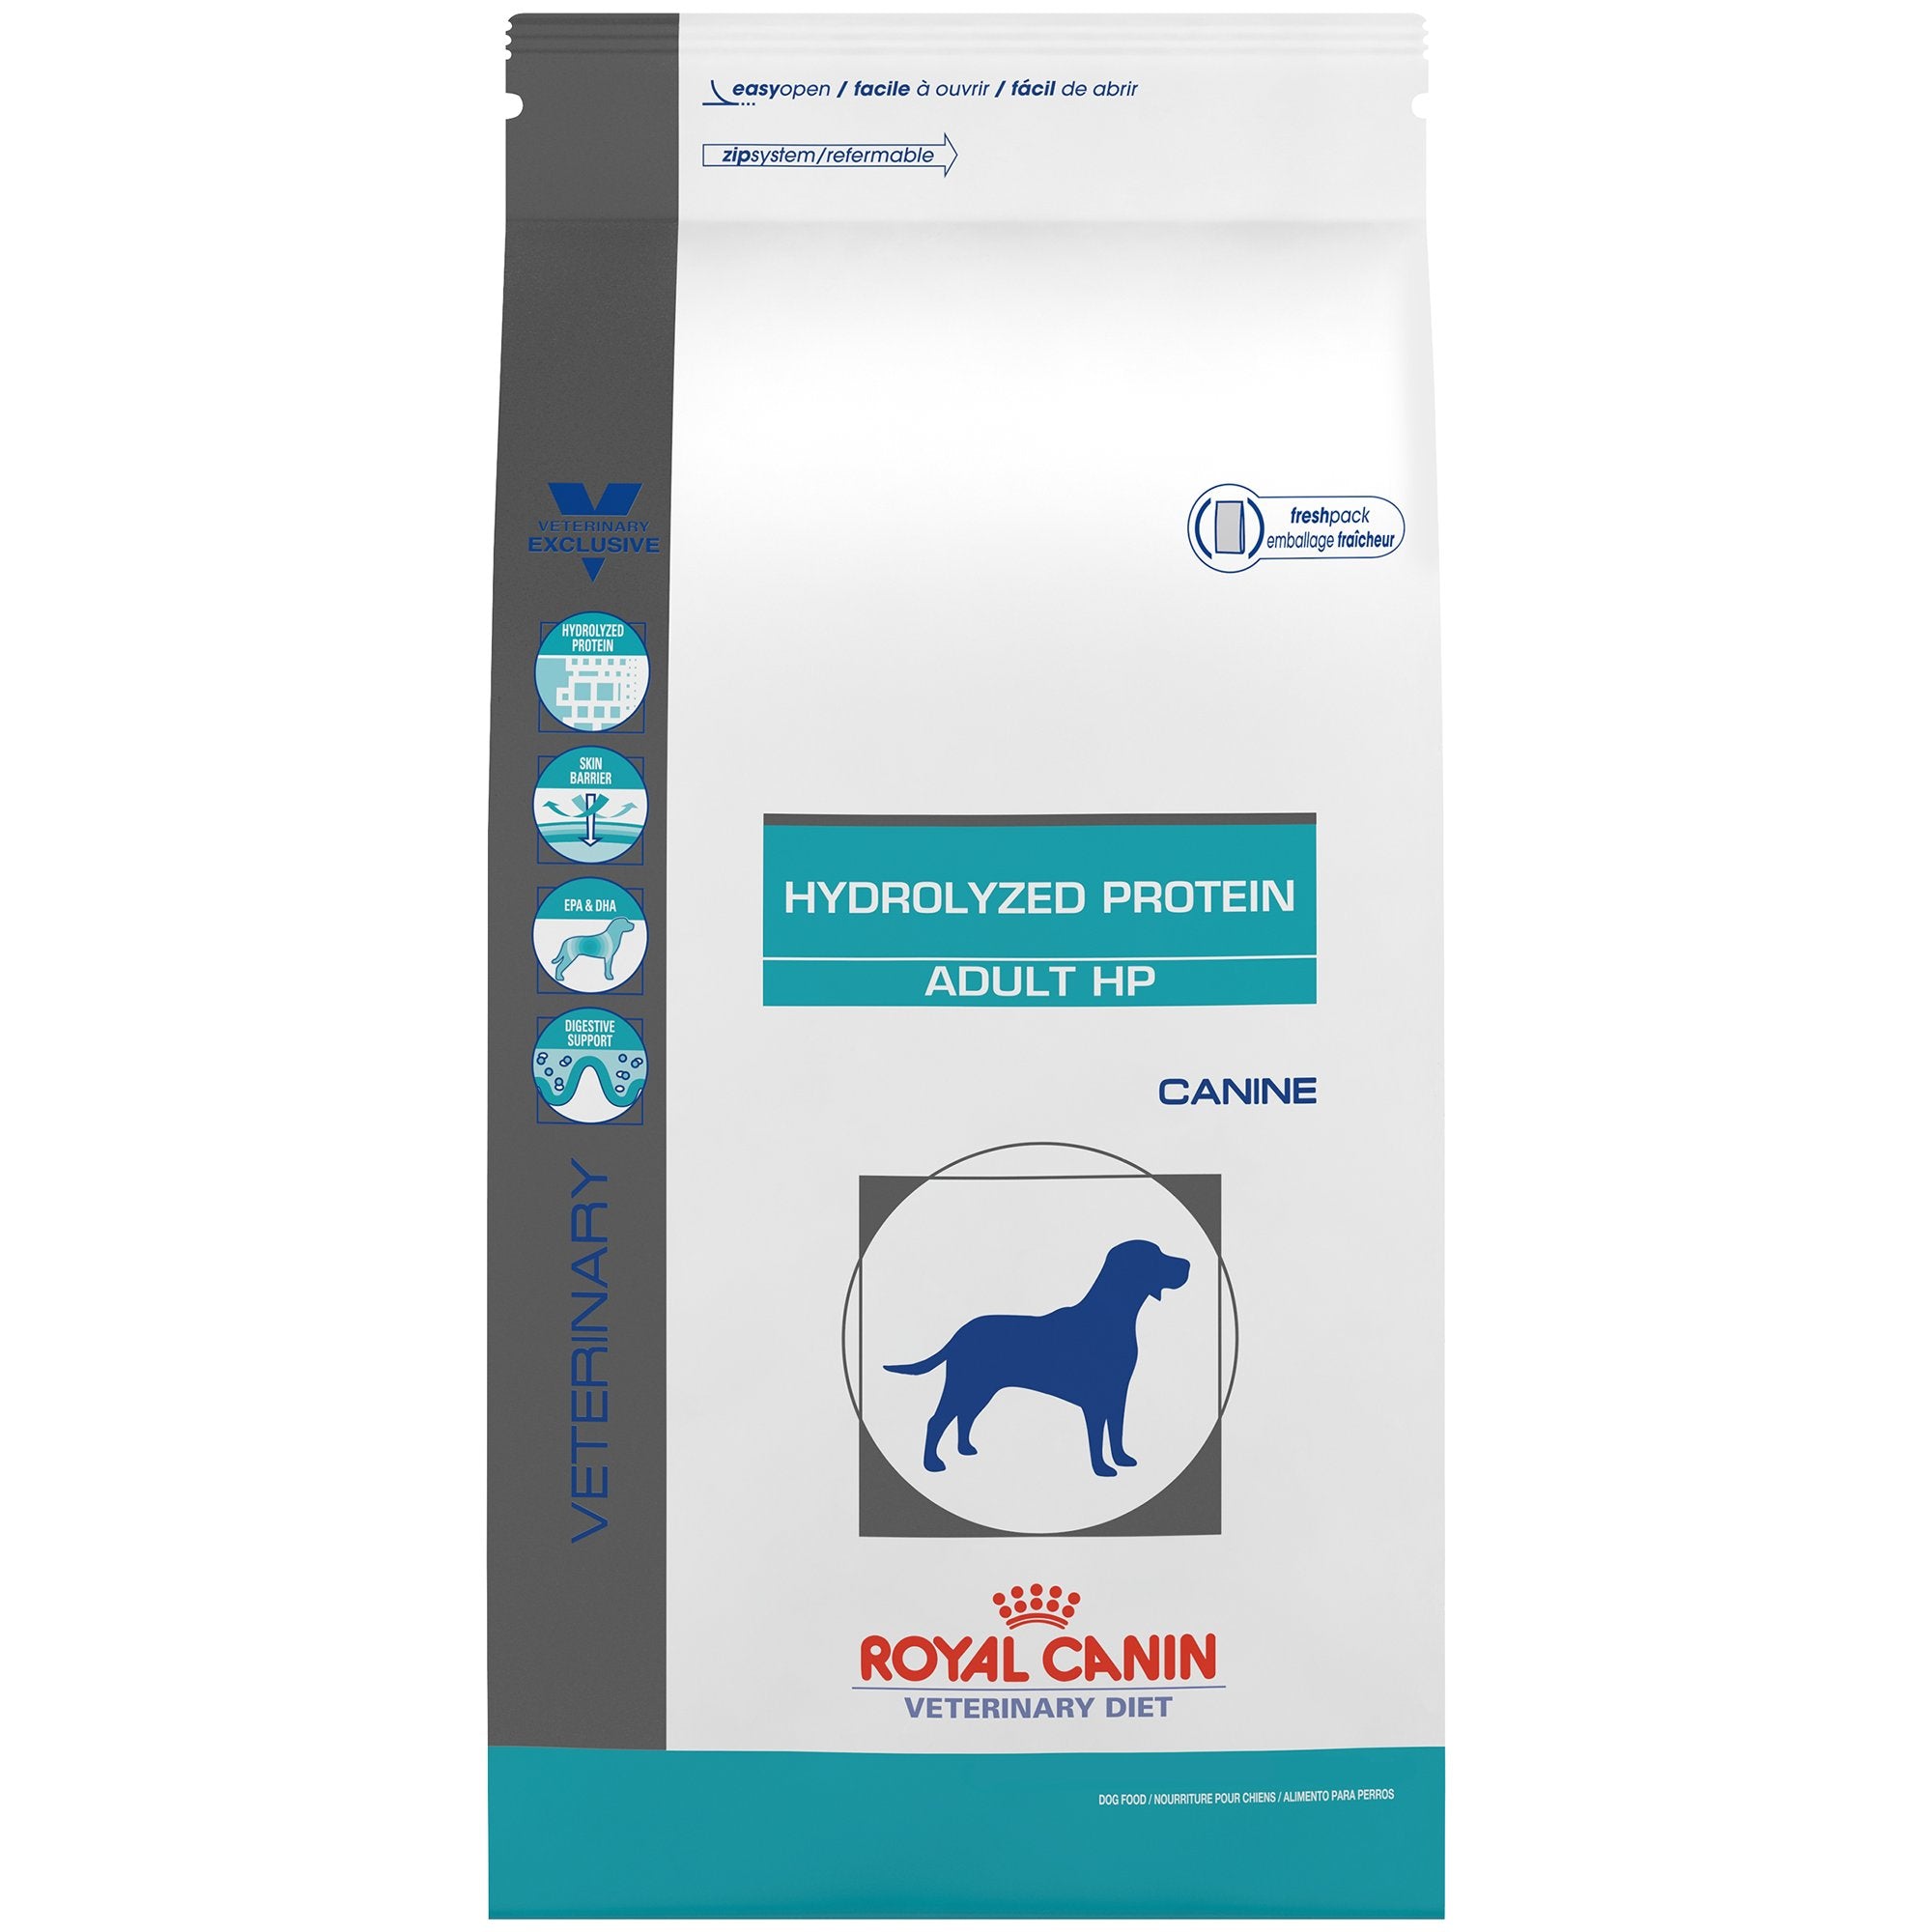 royal canin hydrolyzed protein dog food